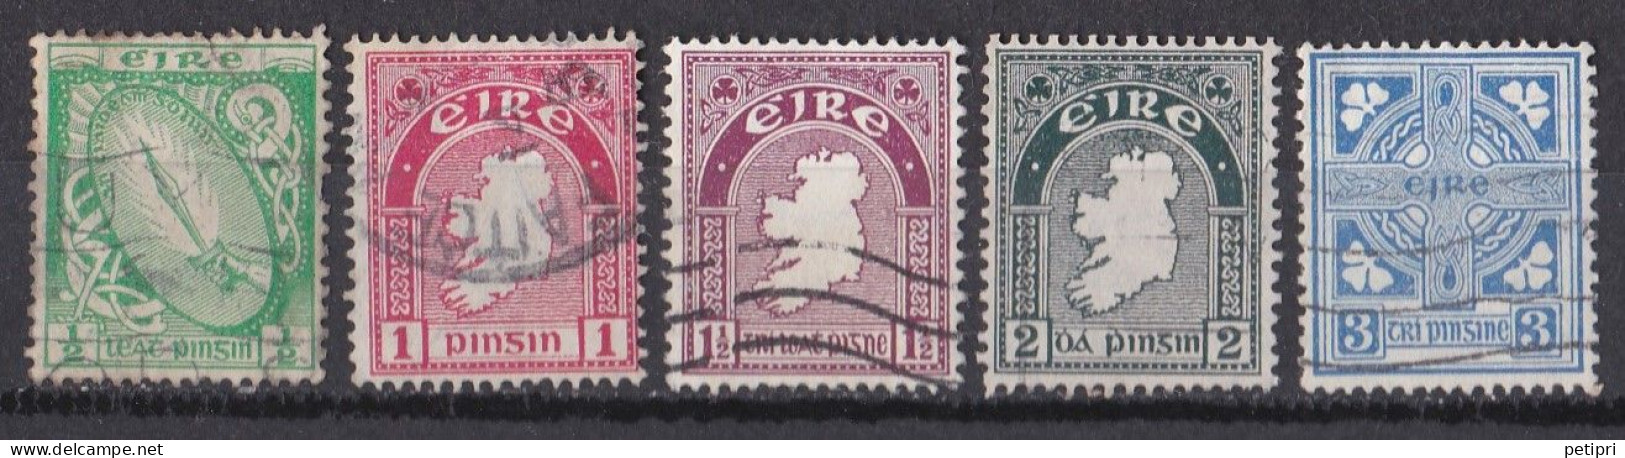 Irlande - 1922  37 - état Libre -   Y&T  N ° 40  79  80  81  83  Oblitéré - Oblitérés